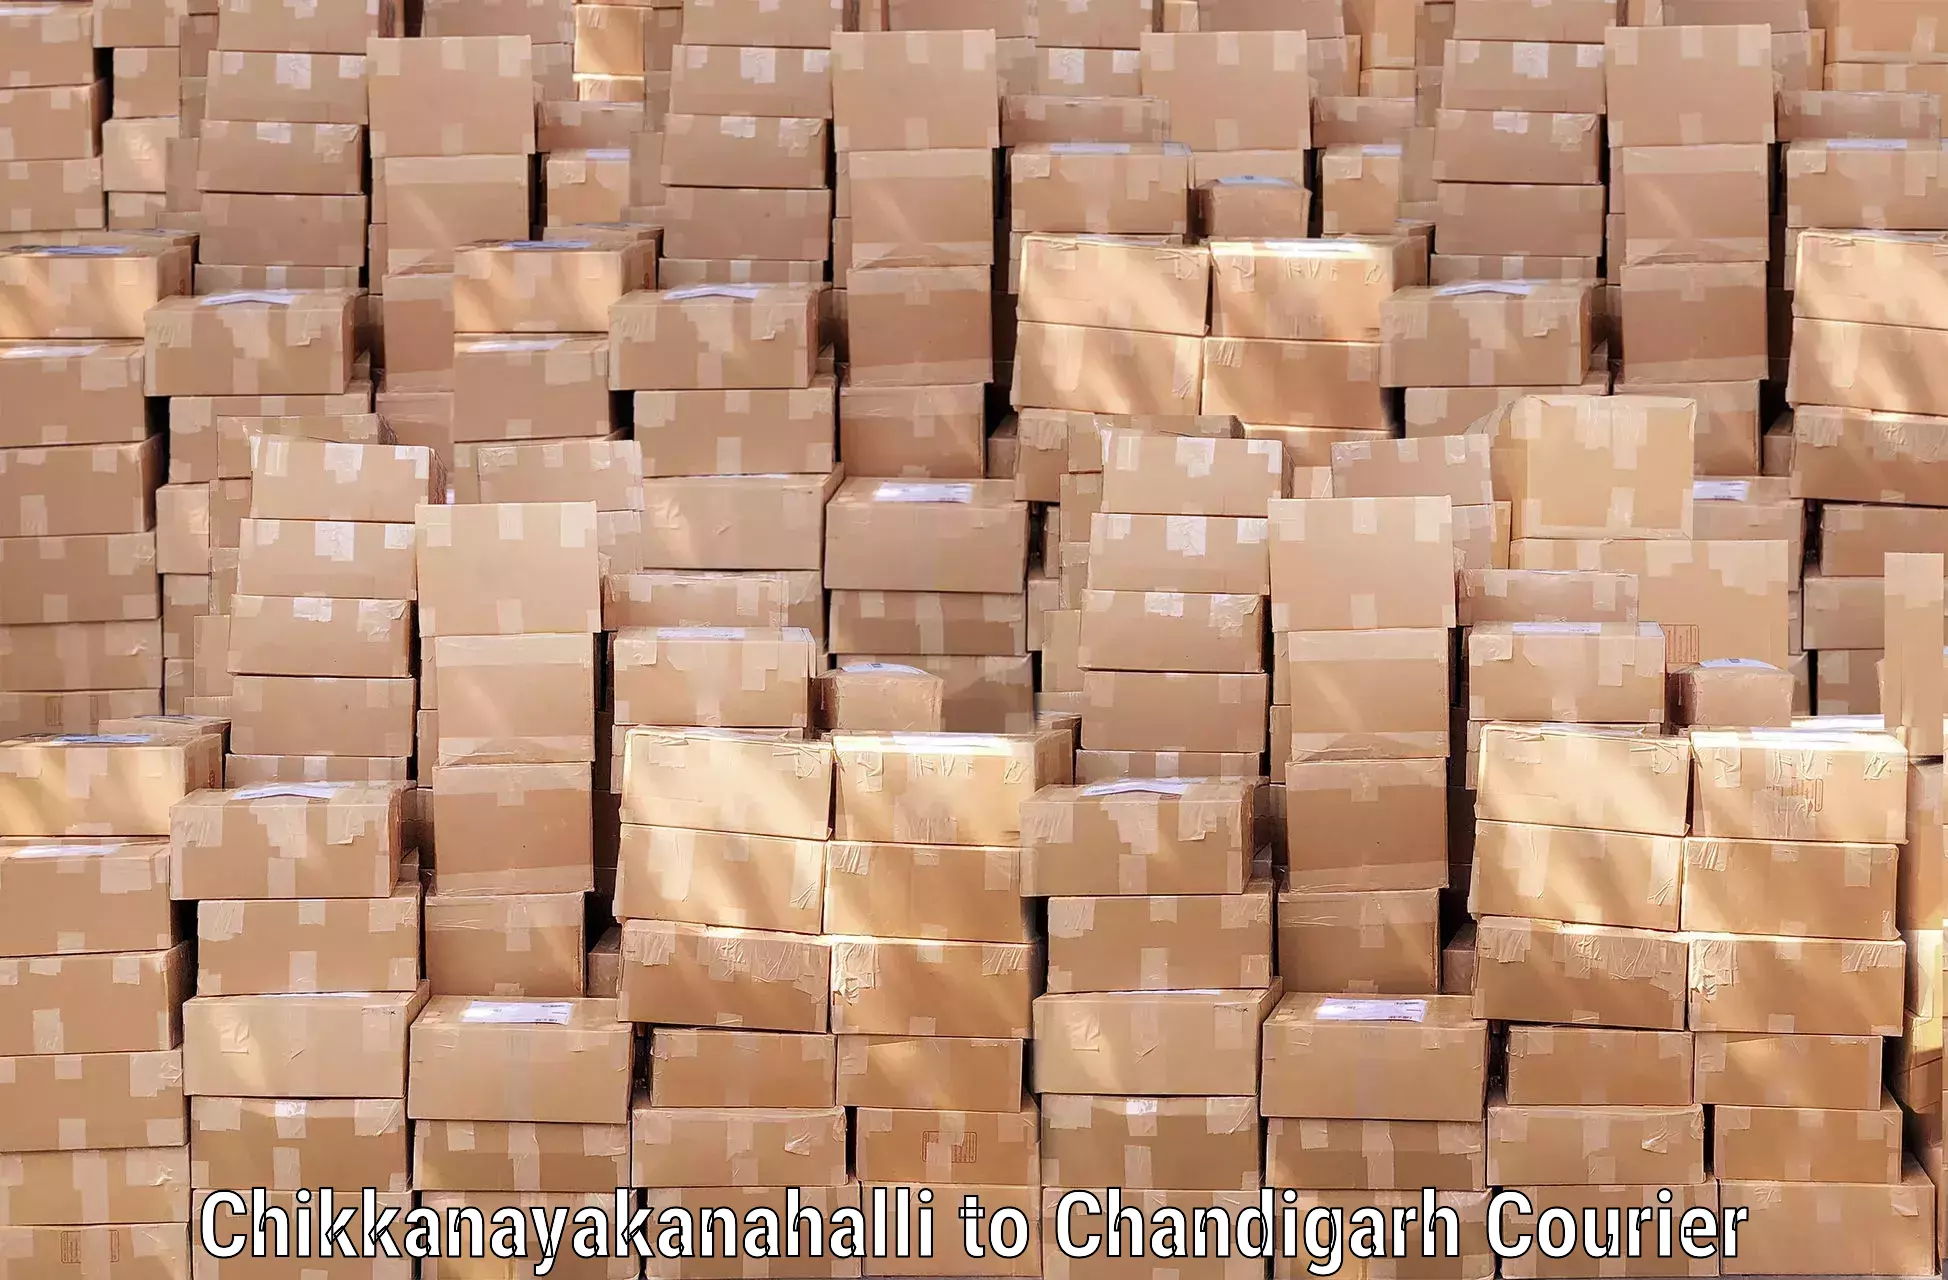 Luggage delivery system Chikkanayakanahalli to Chandigarh